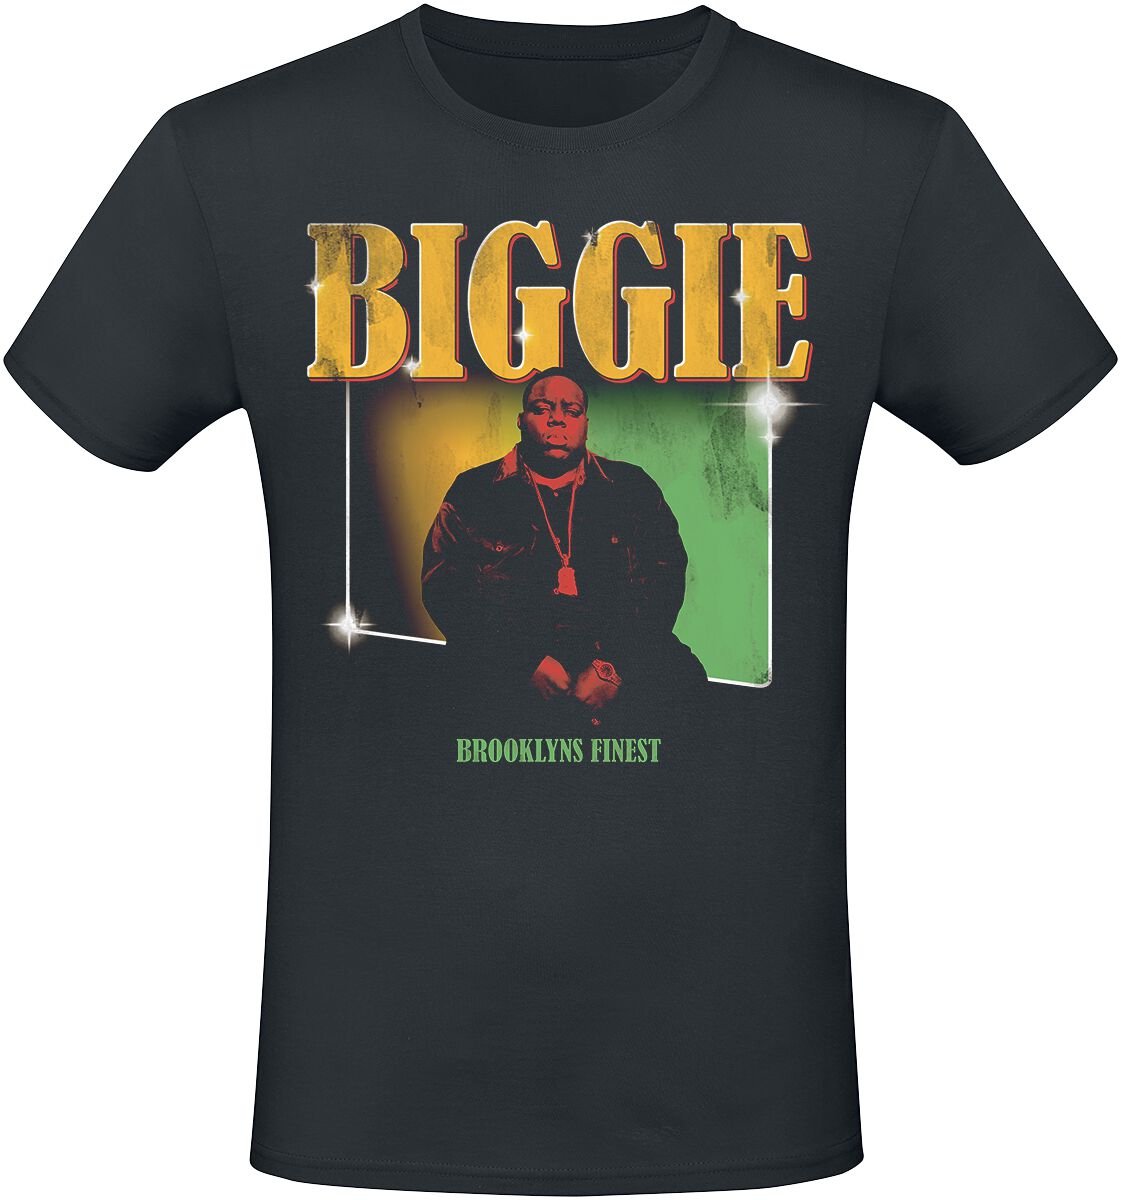 Notorious B.I.G. T-Shirt - Finest - S bis XXL - für Männer - Größe XL - schwarz  - Lizenziertes Merchandise!